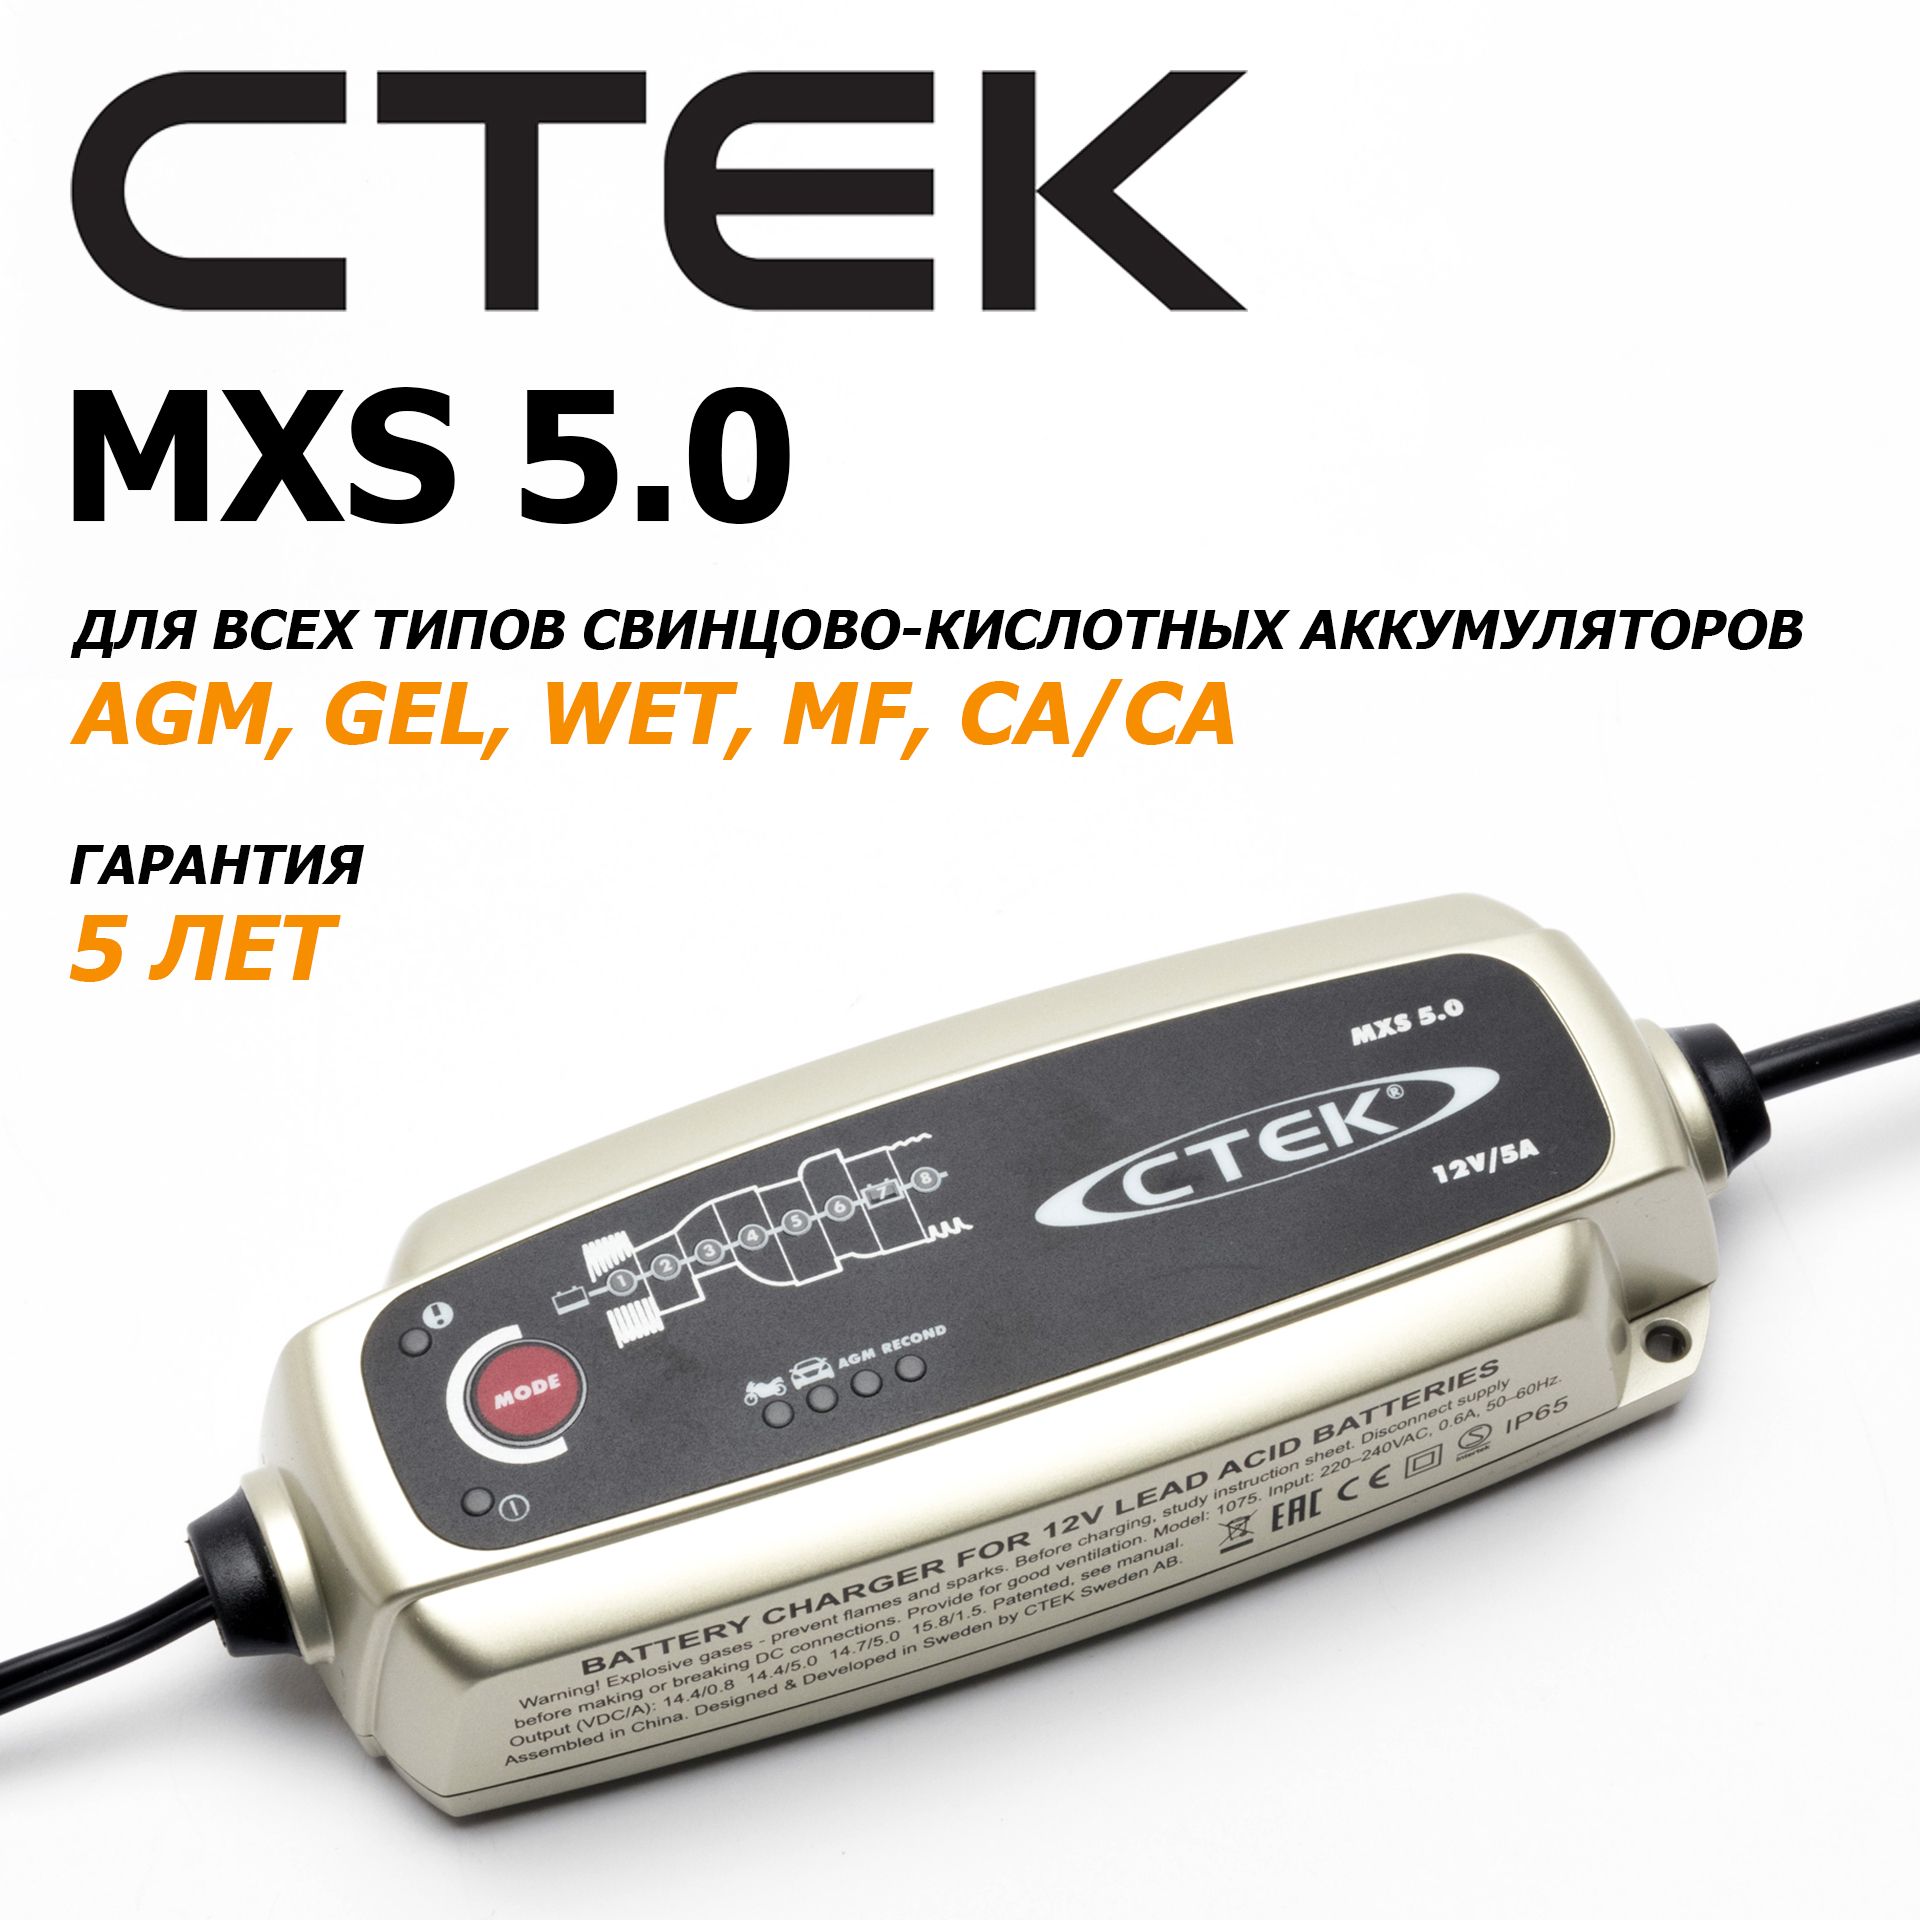 CTEK MXS 5.0 Зарядное устройство для AGM и GEL аккумуляторов